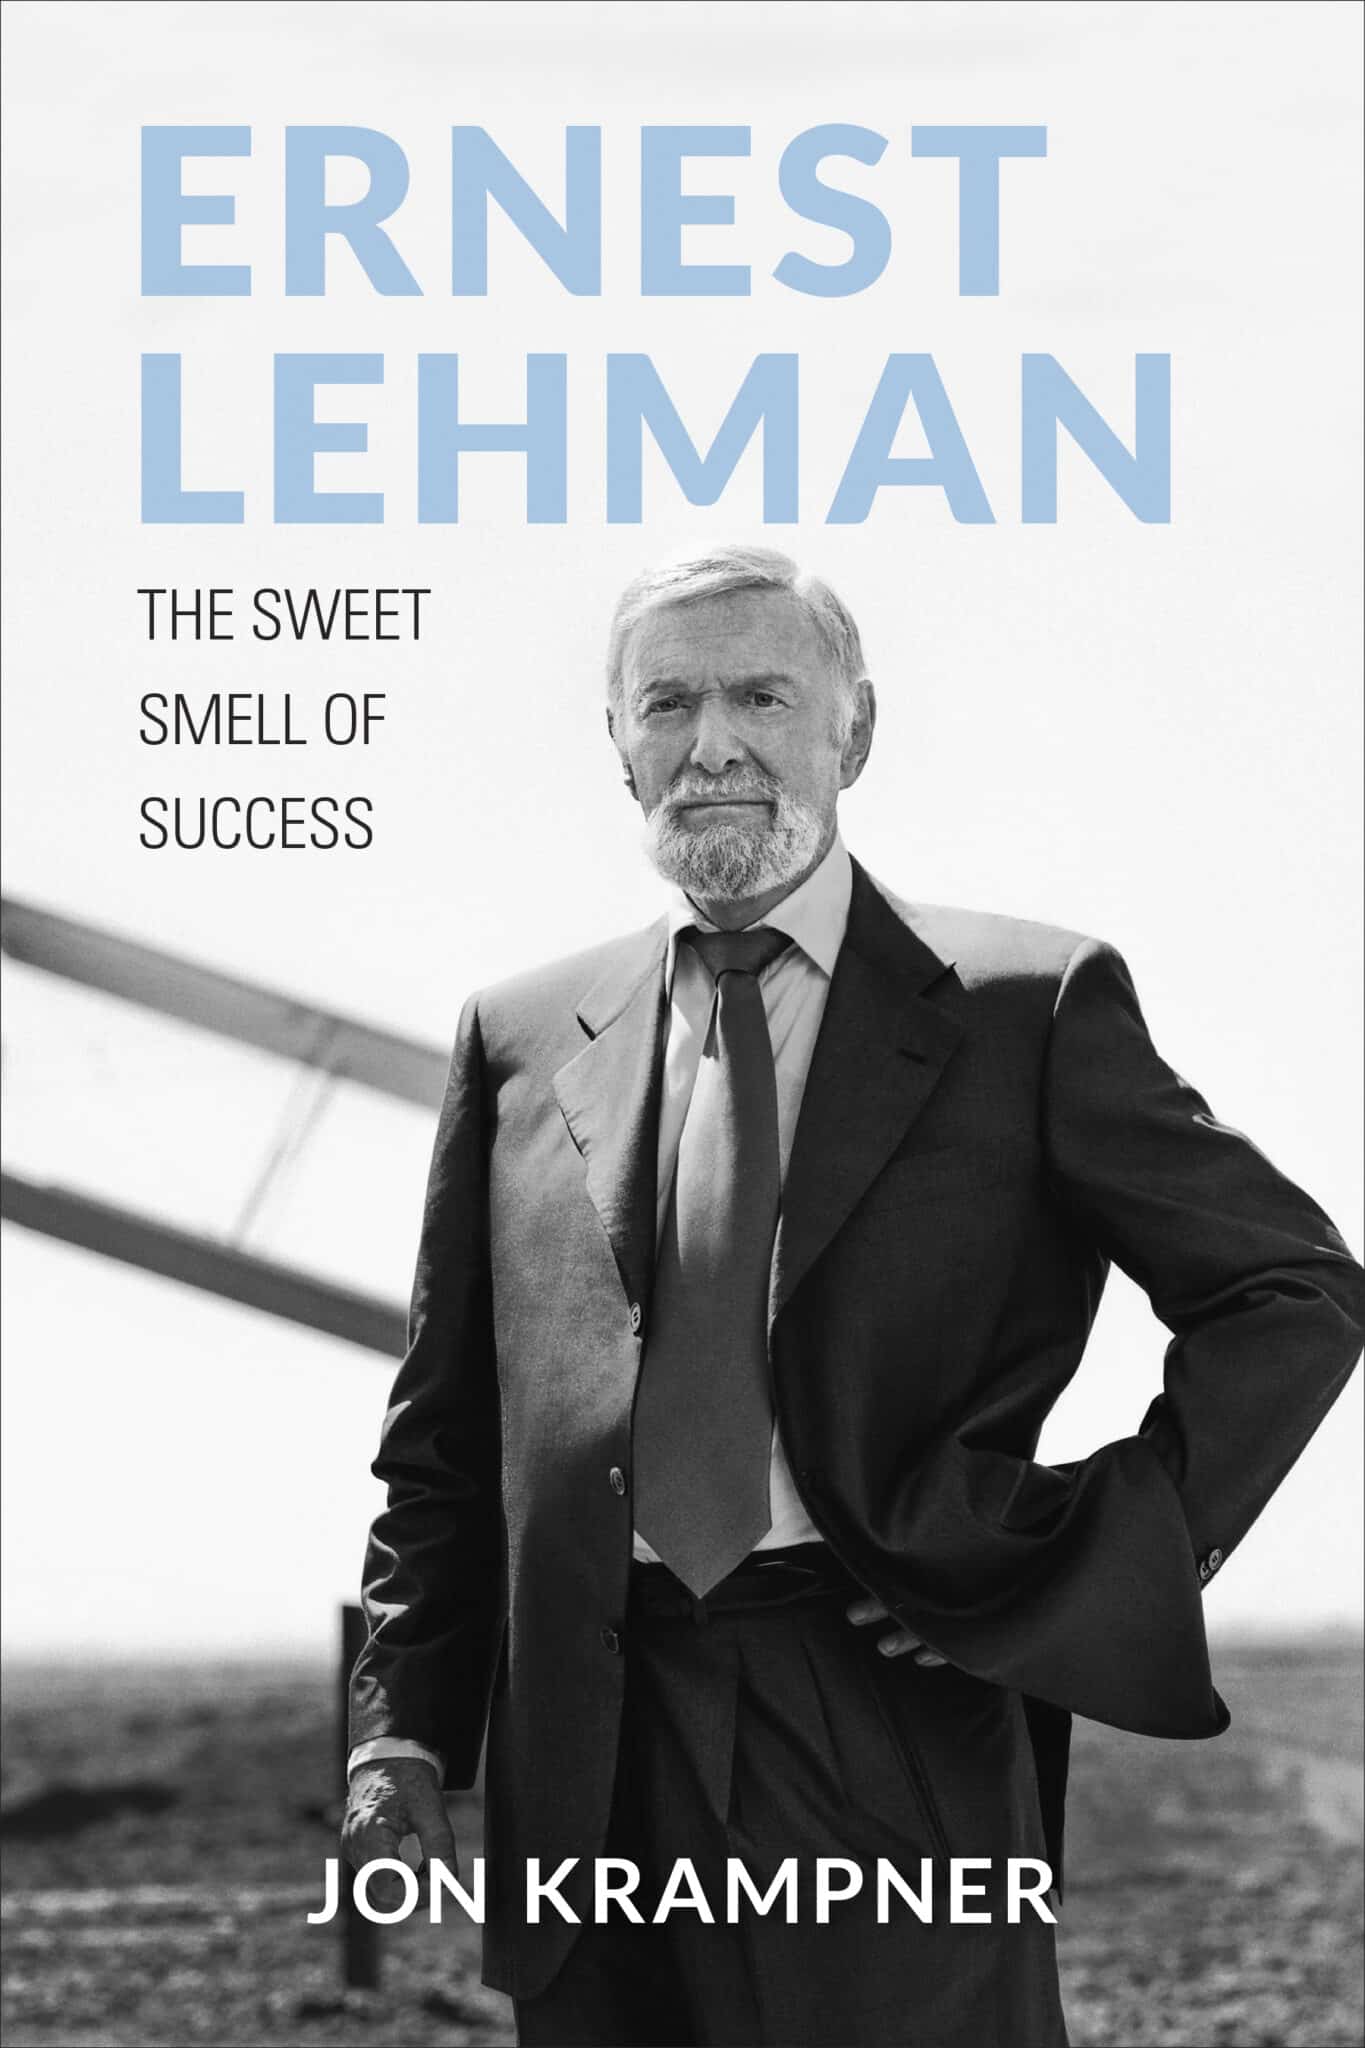 the front cover of Jon Krampner's biography of Ernest Lehman